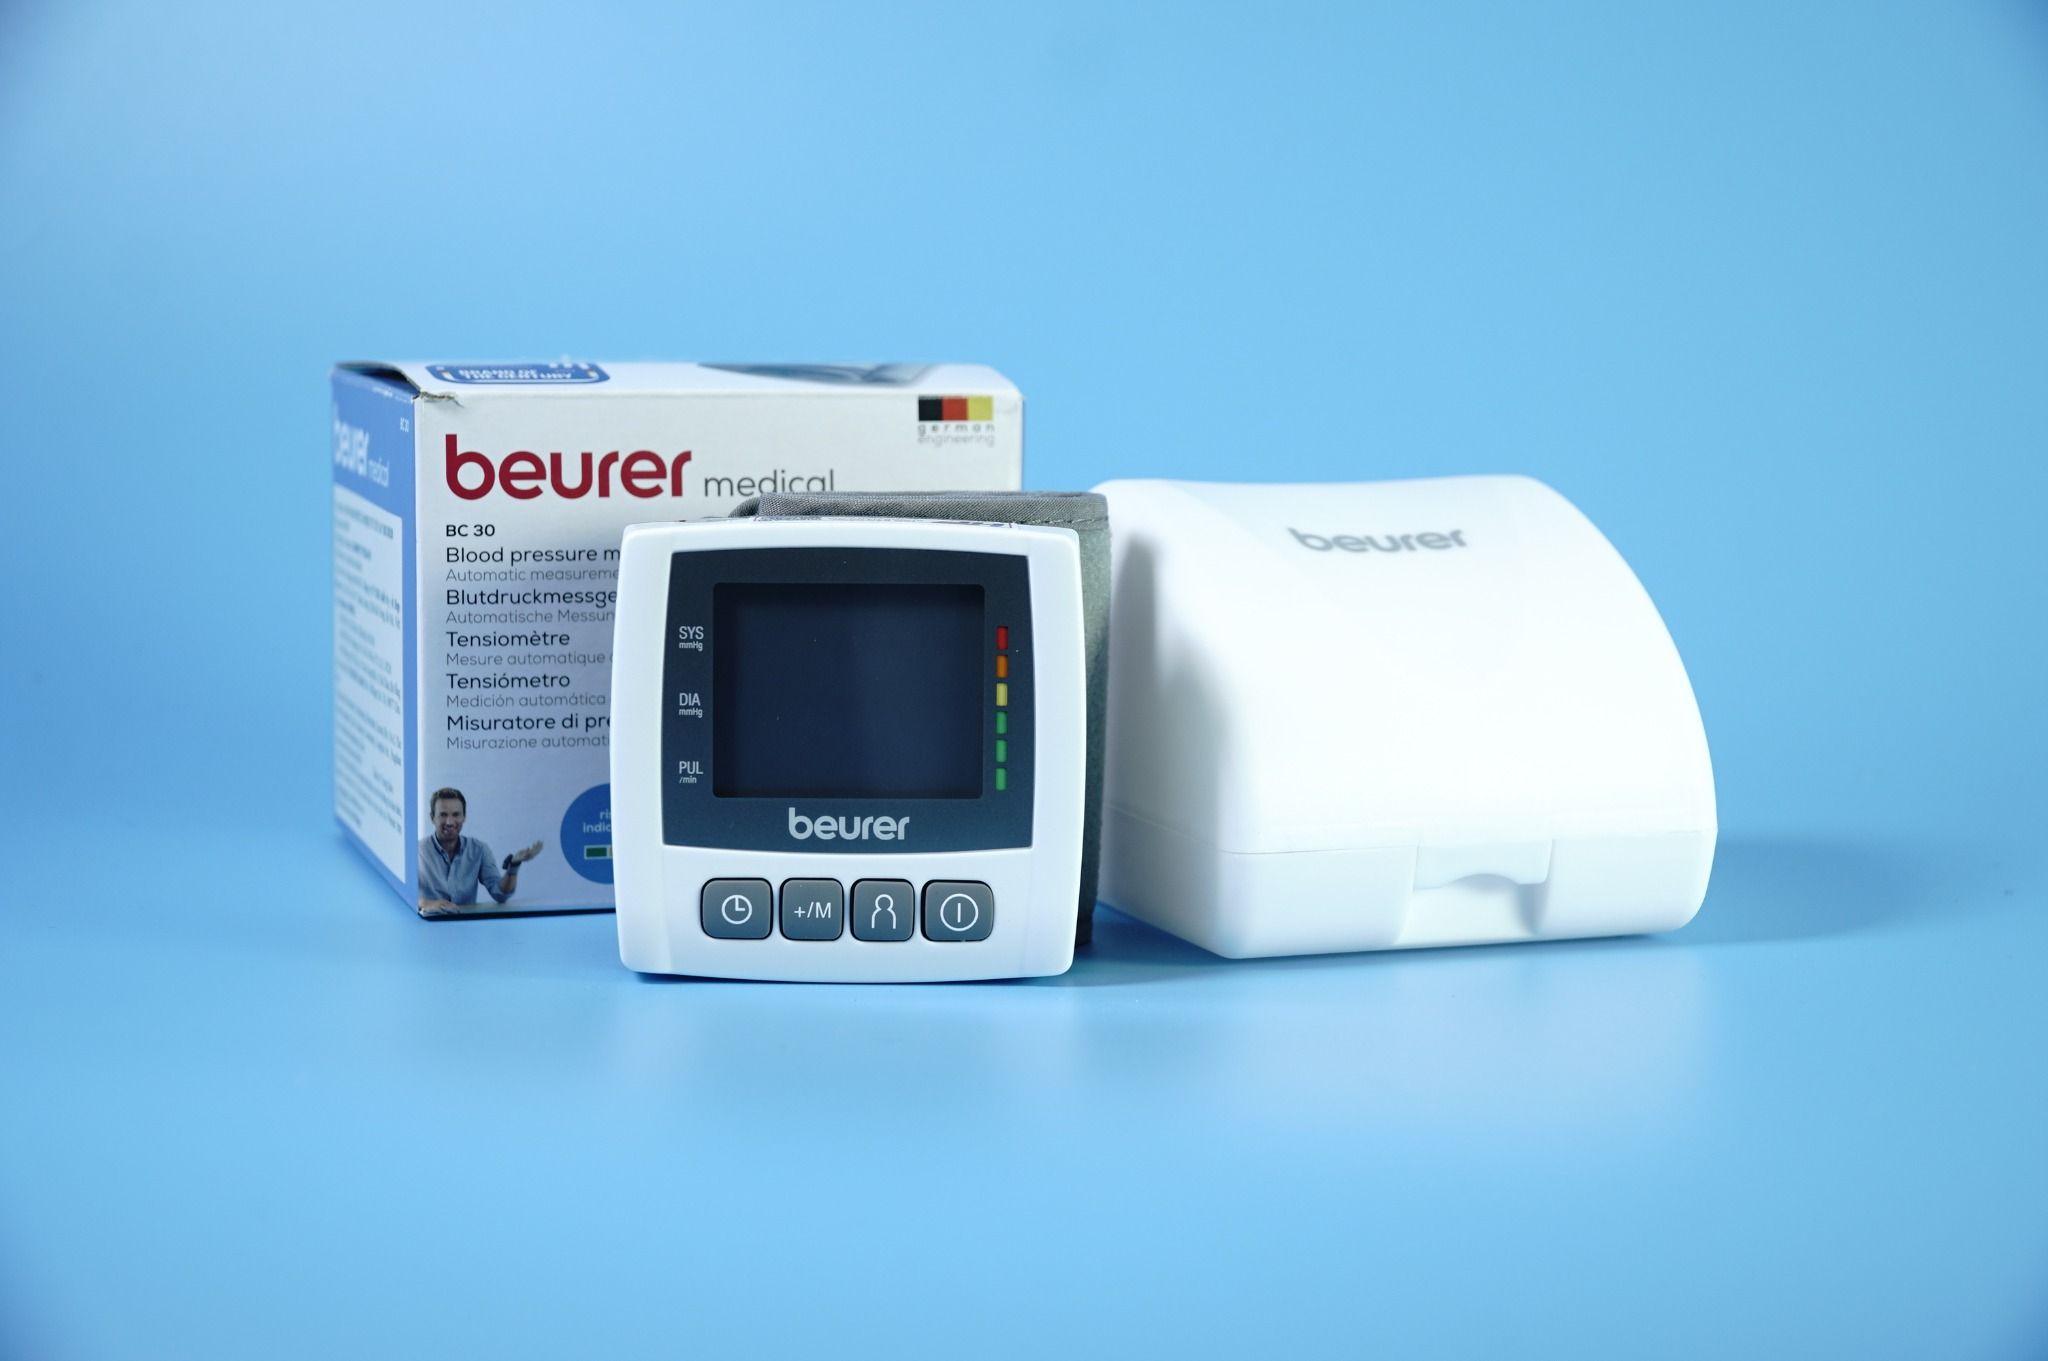  Máy đo huyết áp cổ tay BEURER BC30 nhỏ gọn, thông minh, chính xác tự động 